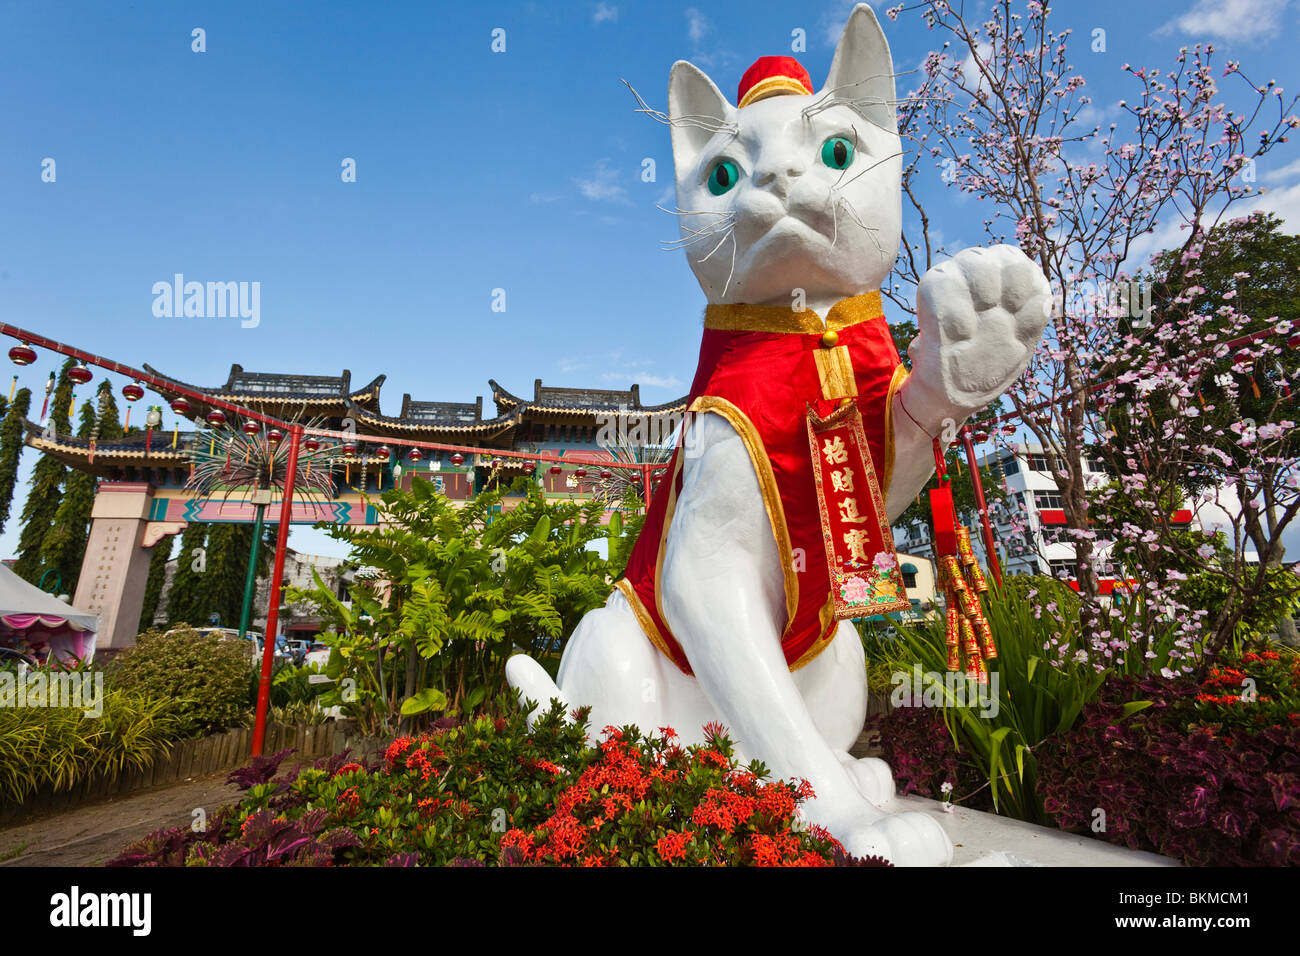 Le grand chat de Kuching monument décoré pour le Nouvel An chinois. Kuching, Sarawak, Bornéo, Malaisie. Banque D'Images